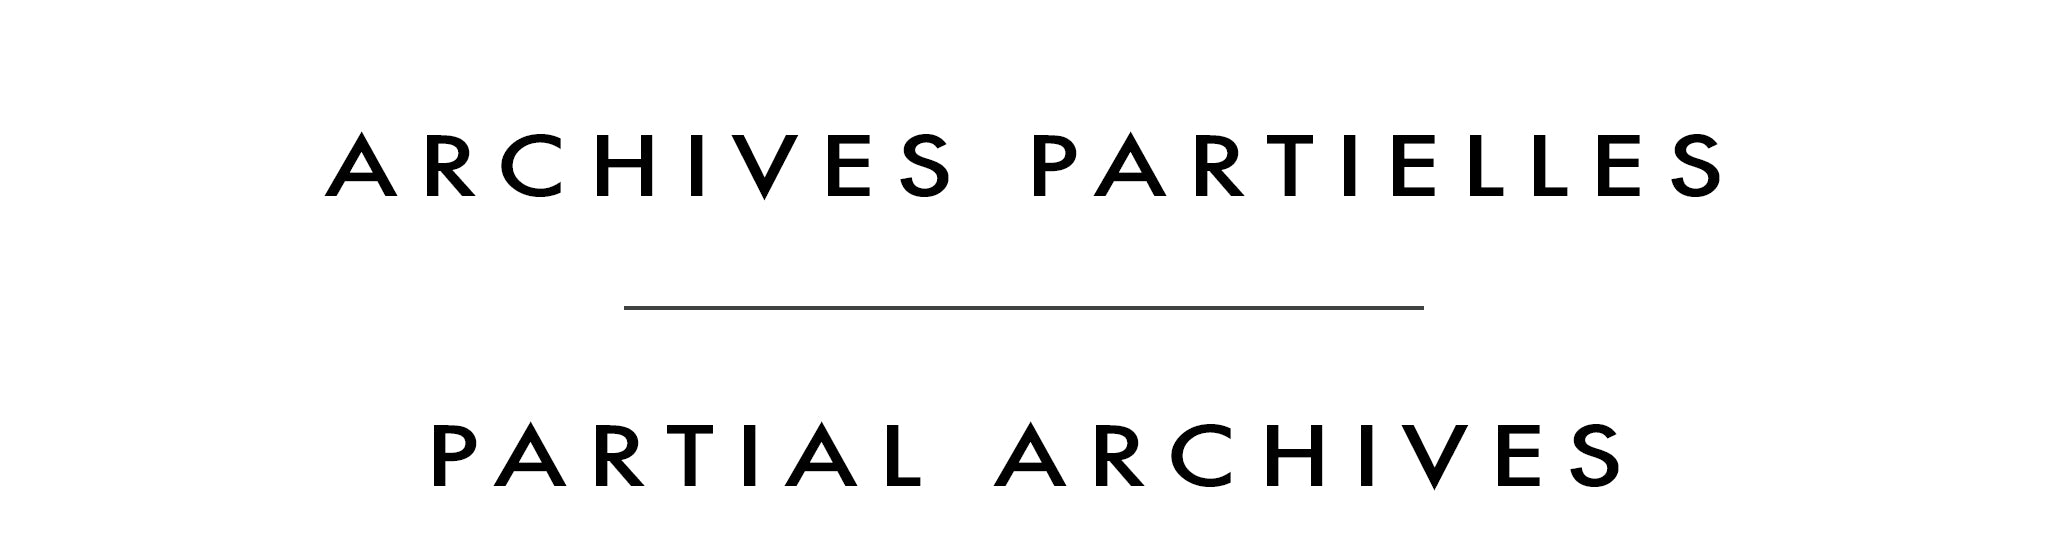 Archives partielles | Partial Archives | Daniel Renaud